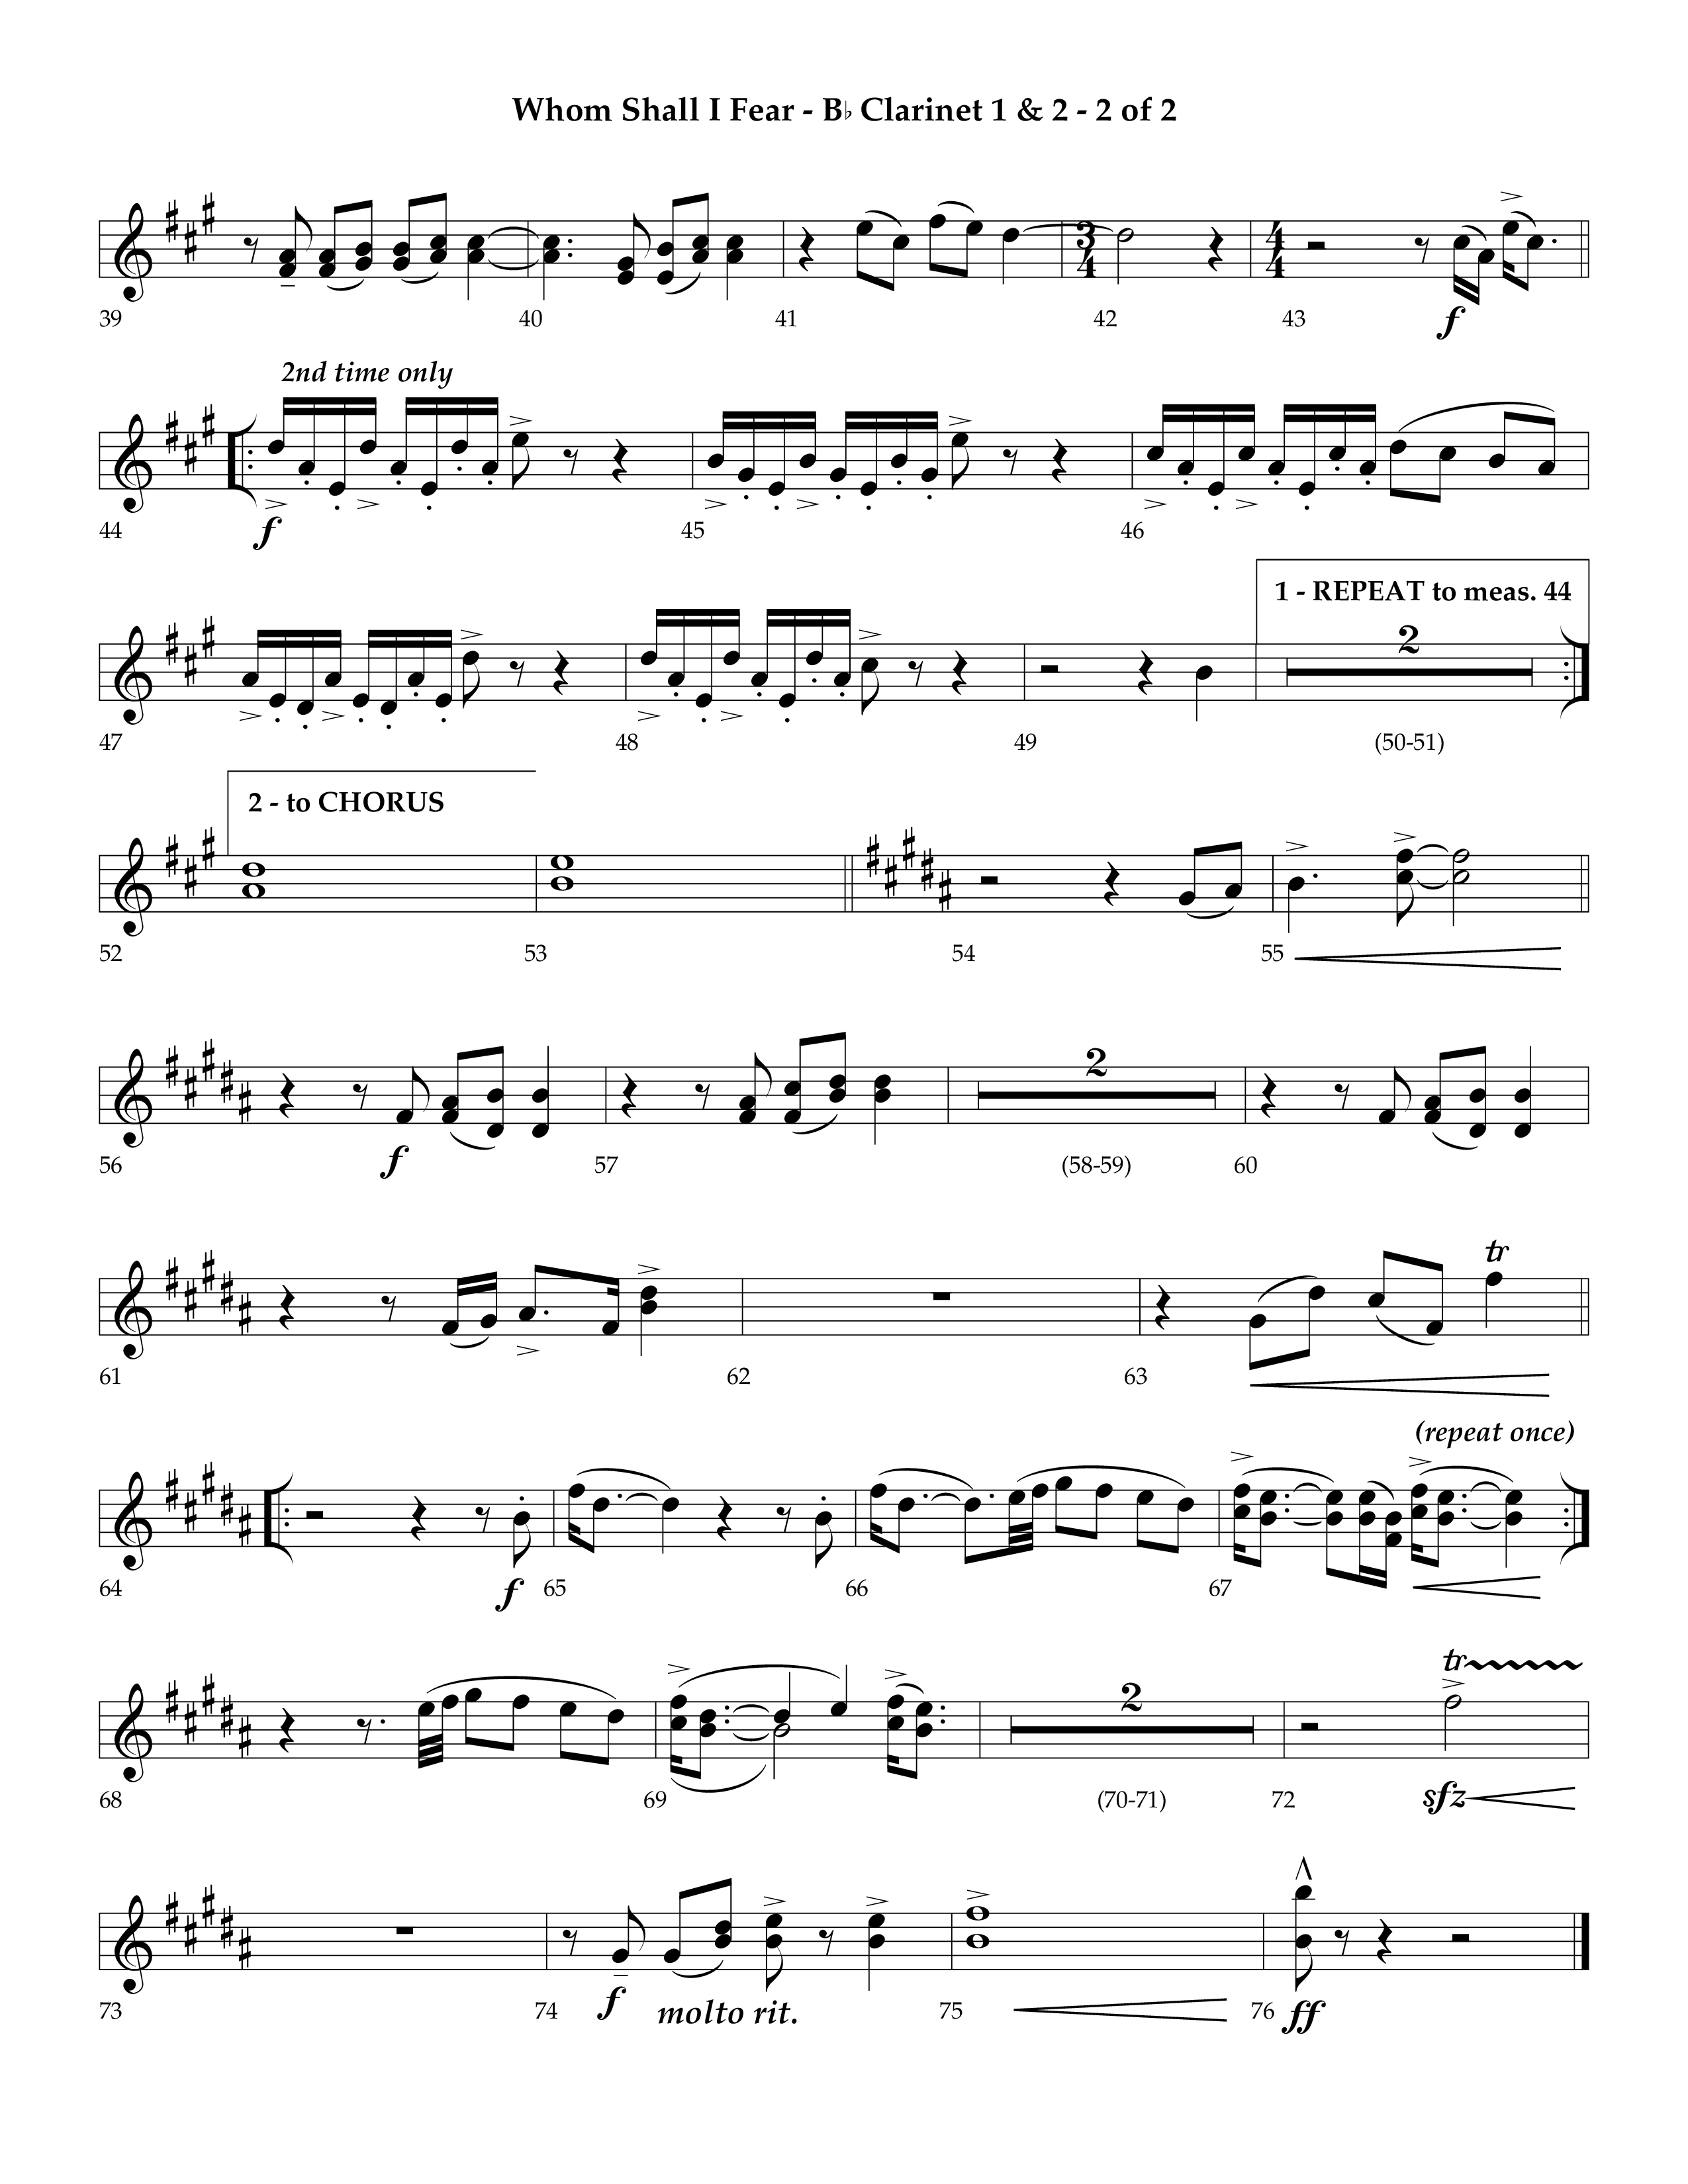 Whom Shall I Fear (God Of Angel Armies) (Choral Anthem SATB) Clarinet 1/2 (Lifeway Choral / Arr. Ken Barker / Orch. David Shipps)